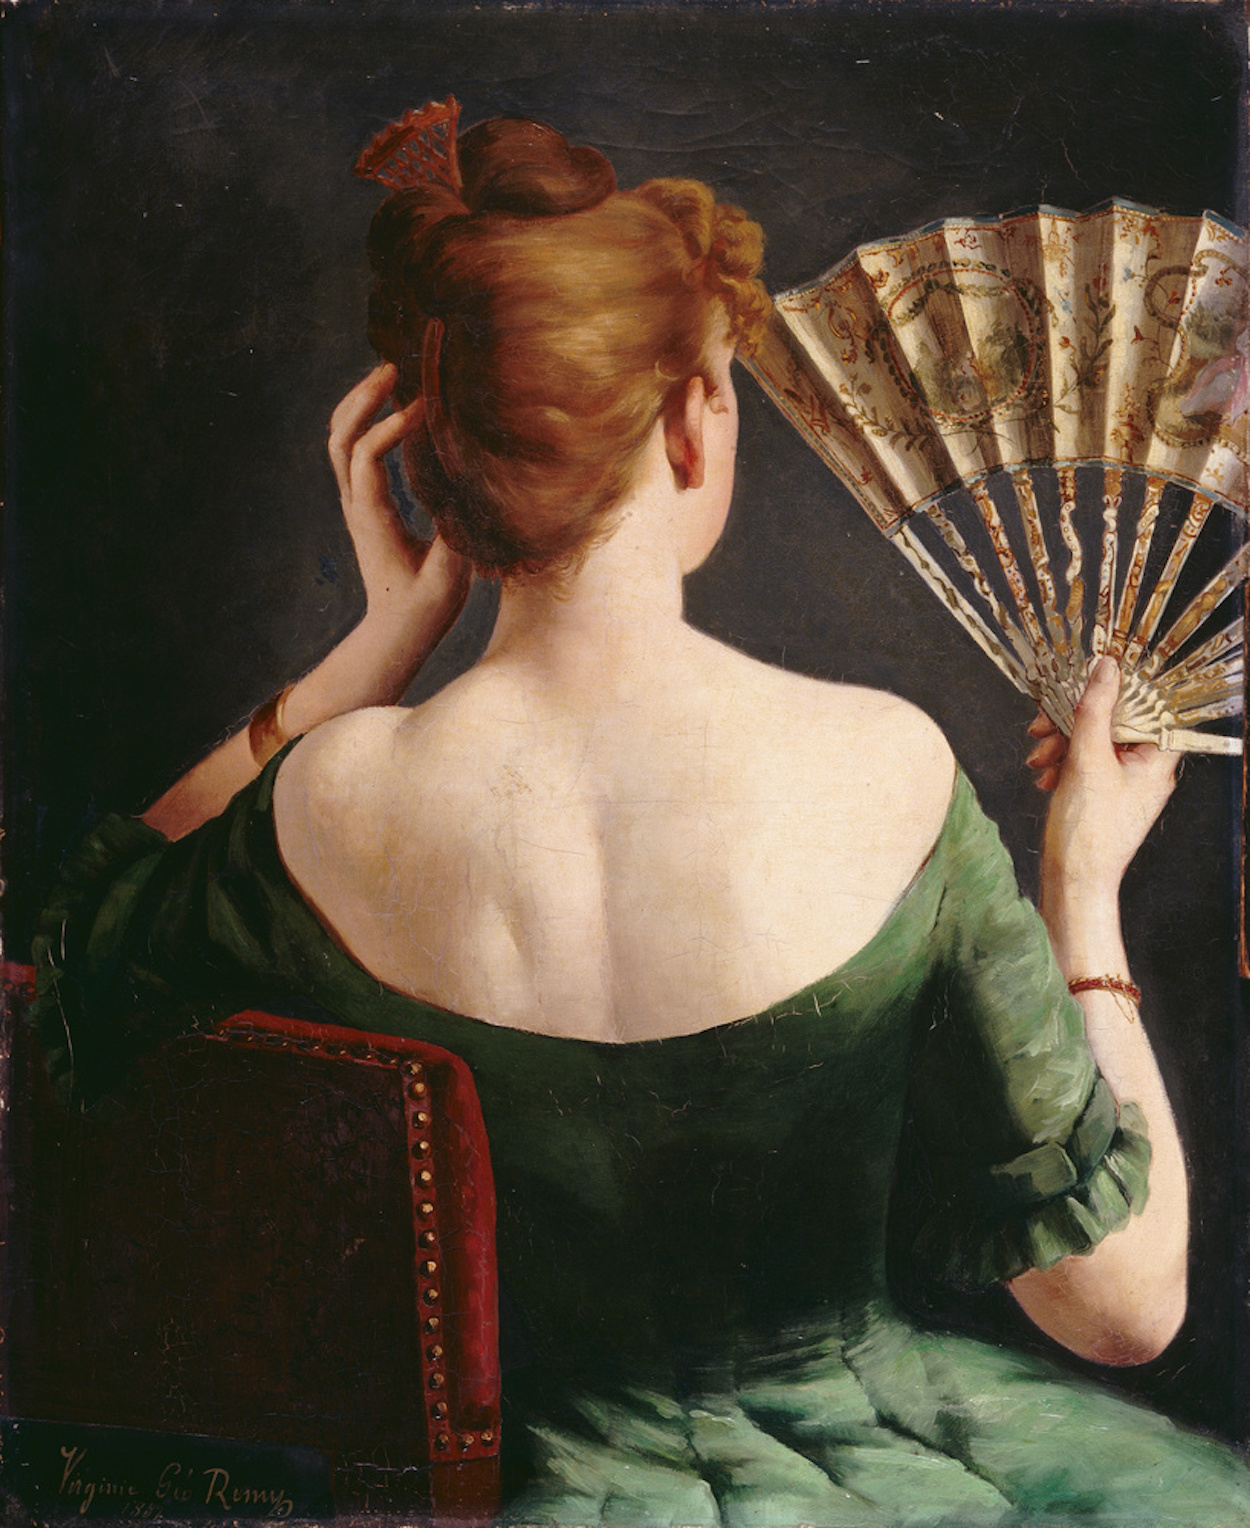 Evantaiul bunicii by Virginie Géo-Rémy - 1887 - 72 x 59 cm 